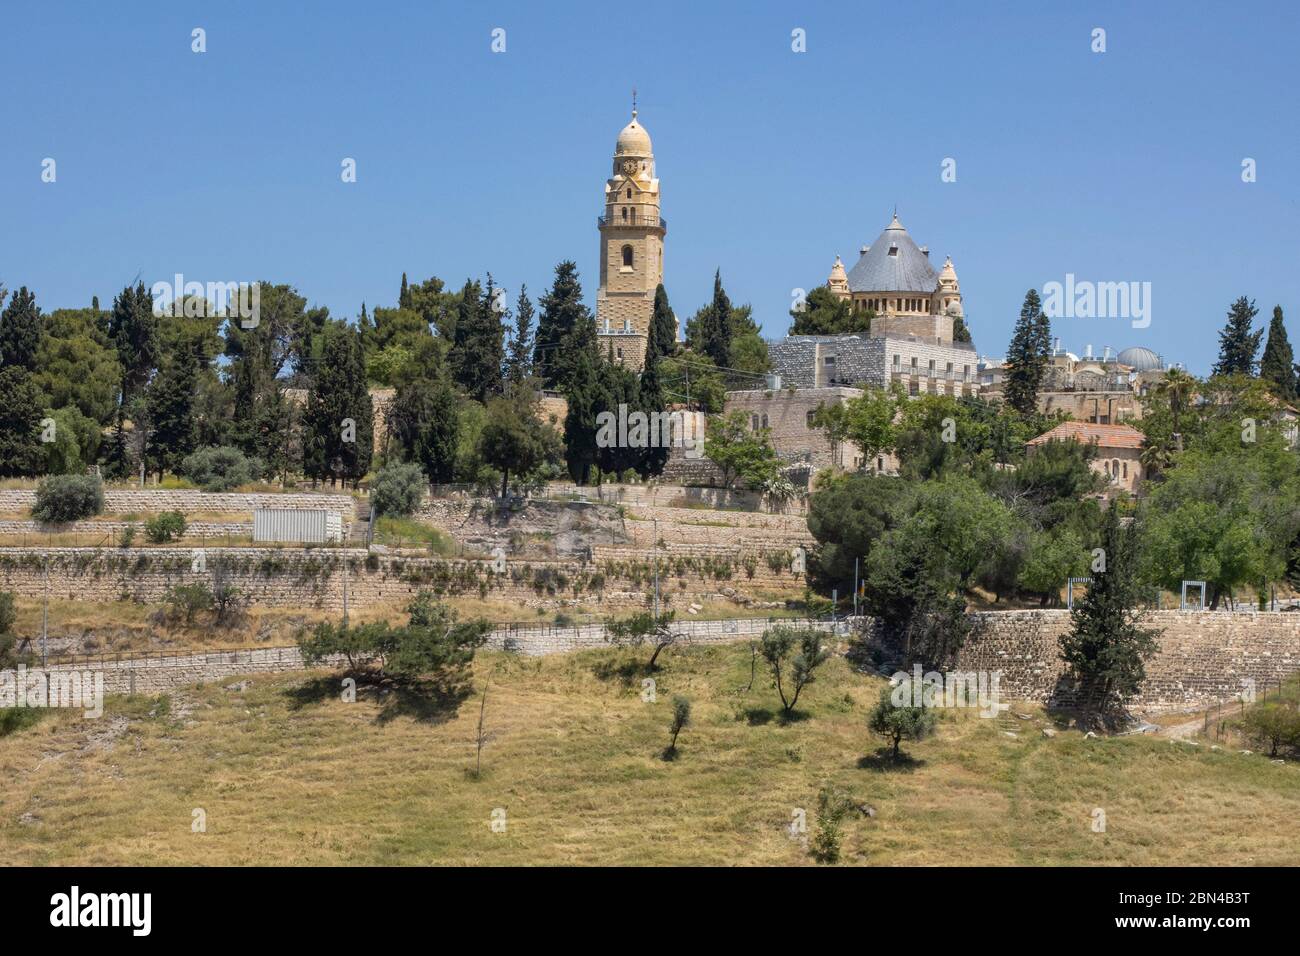 Jerusalén, Israel - 5 de mayo de 2020: La abadía de la Dormición, situada en el monte Sión, Jerusalén, Israel. Foto de stock